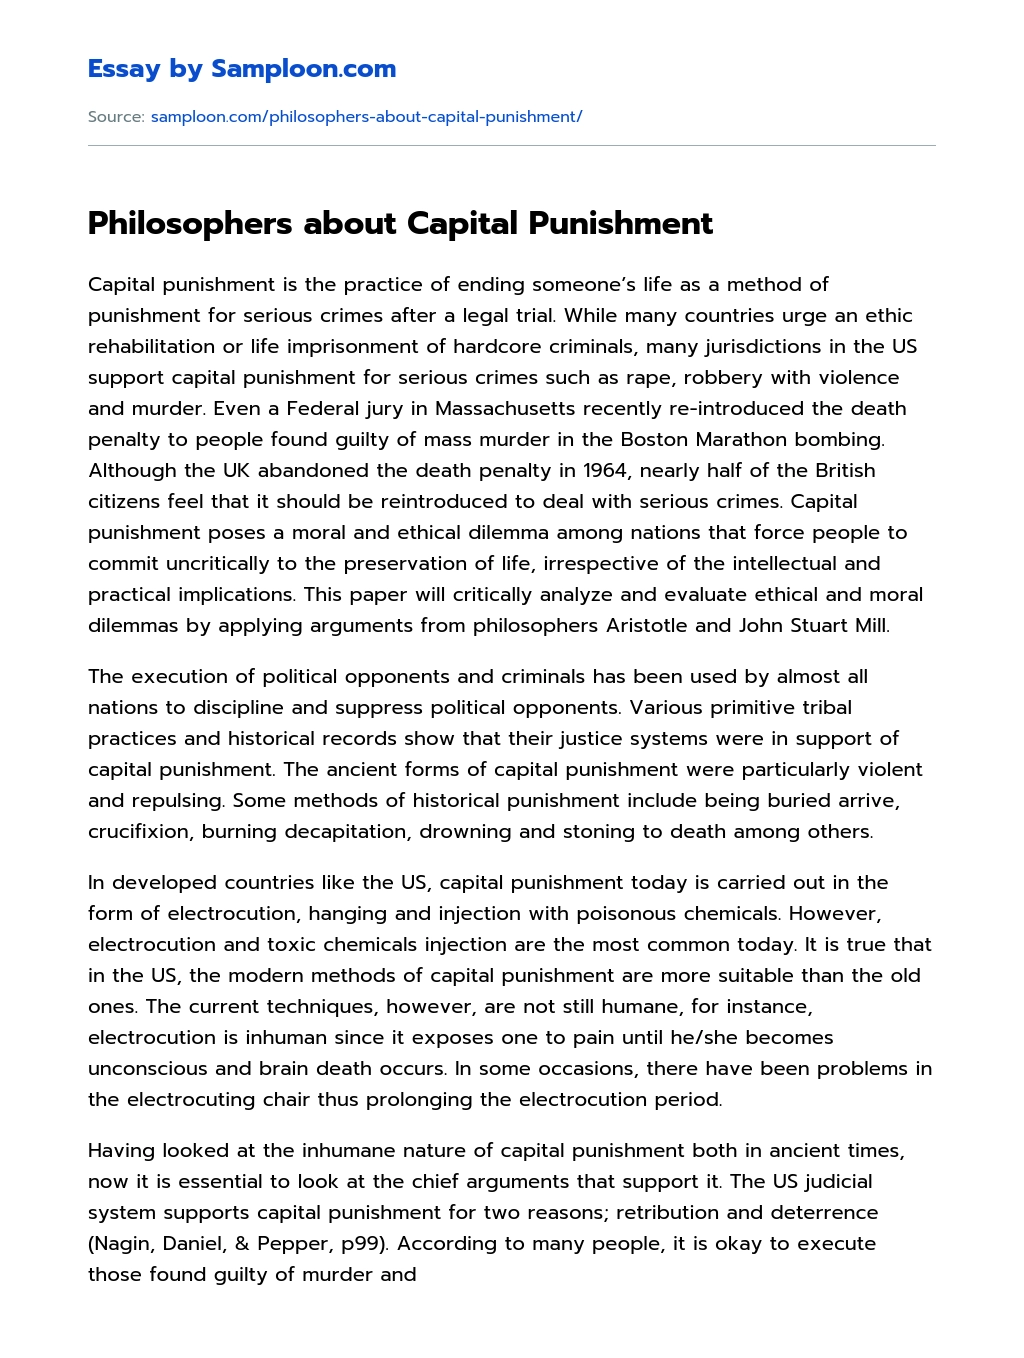 Philosophers about Capital Punishment essay